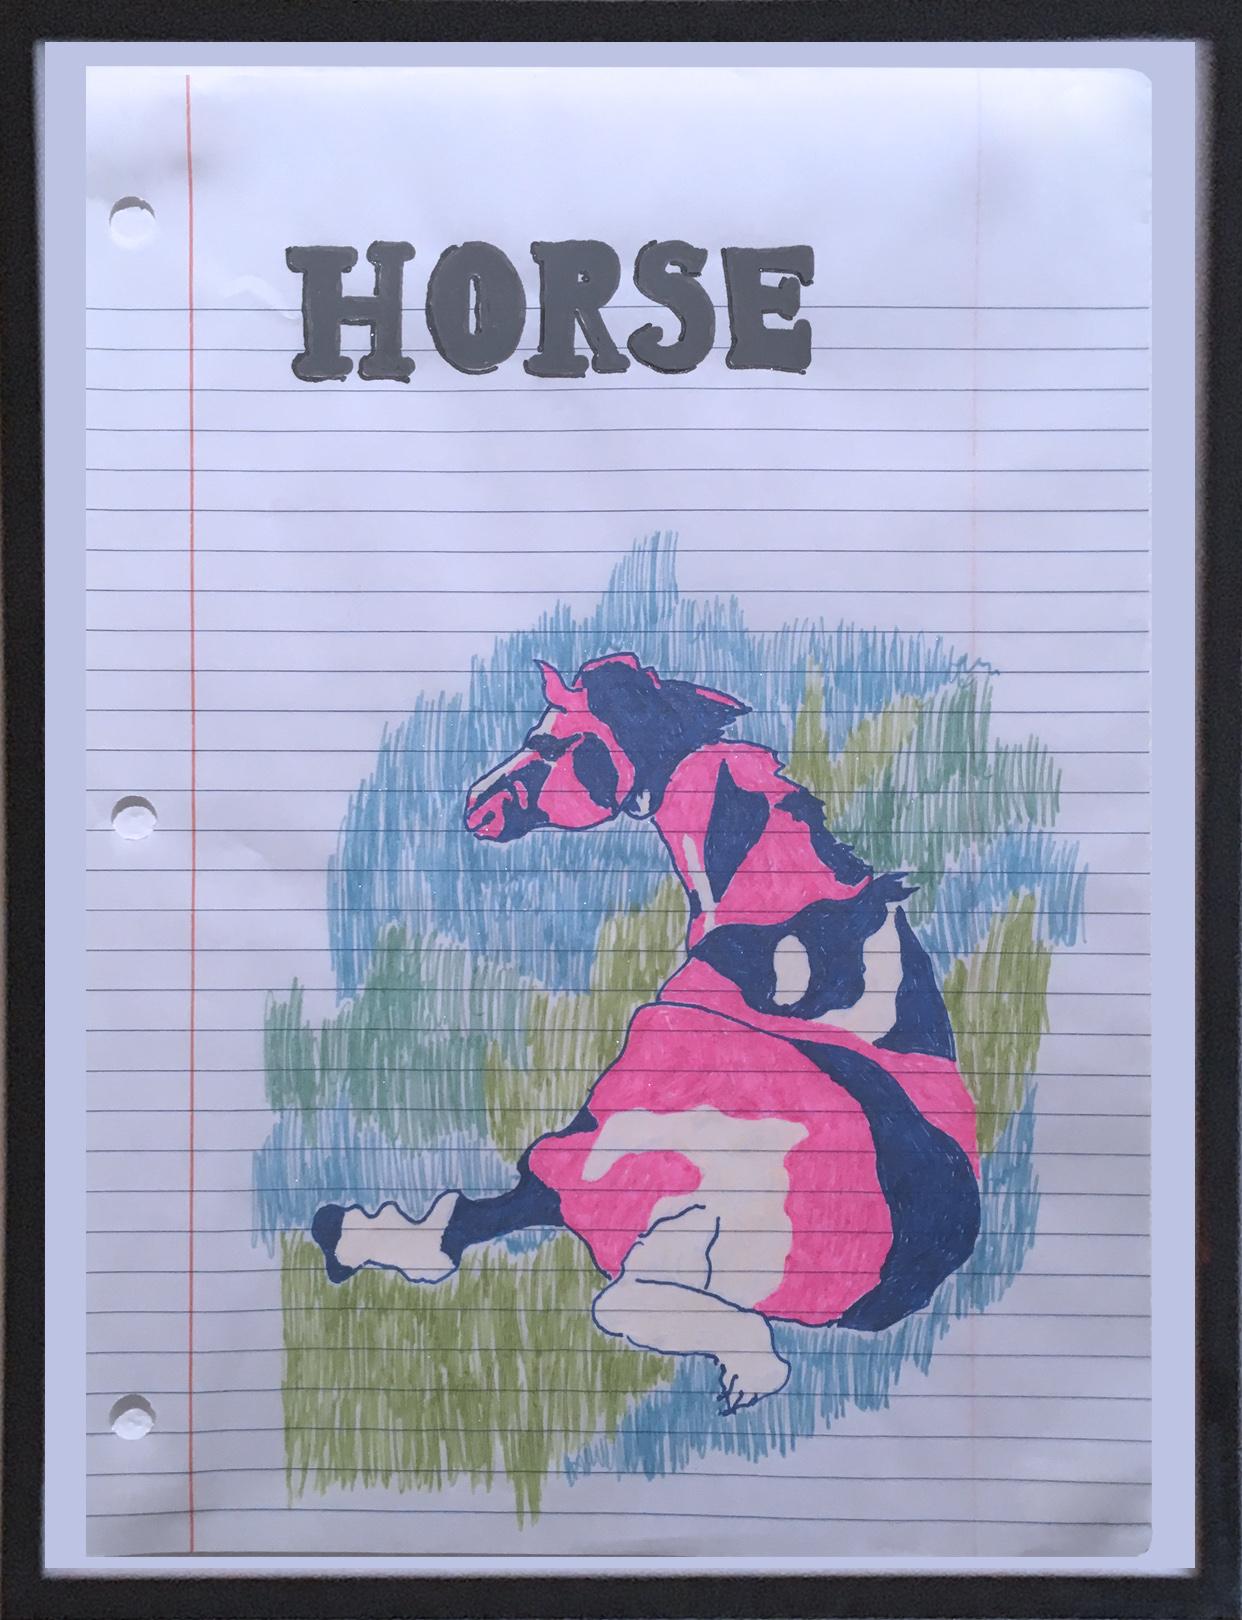 Horse, 2020, crayon à gel sur papier, figuratif, dessin, encadré, rose, bleu, blanc